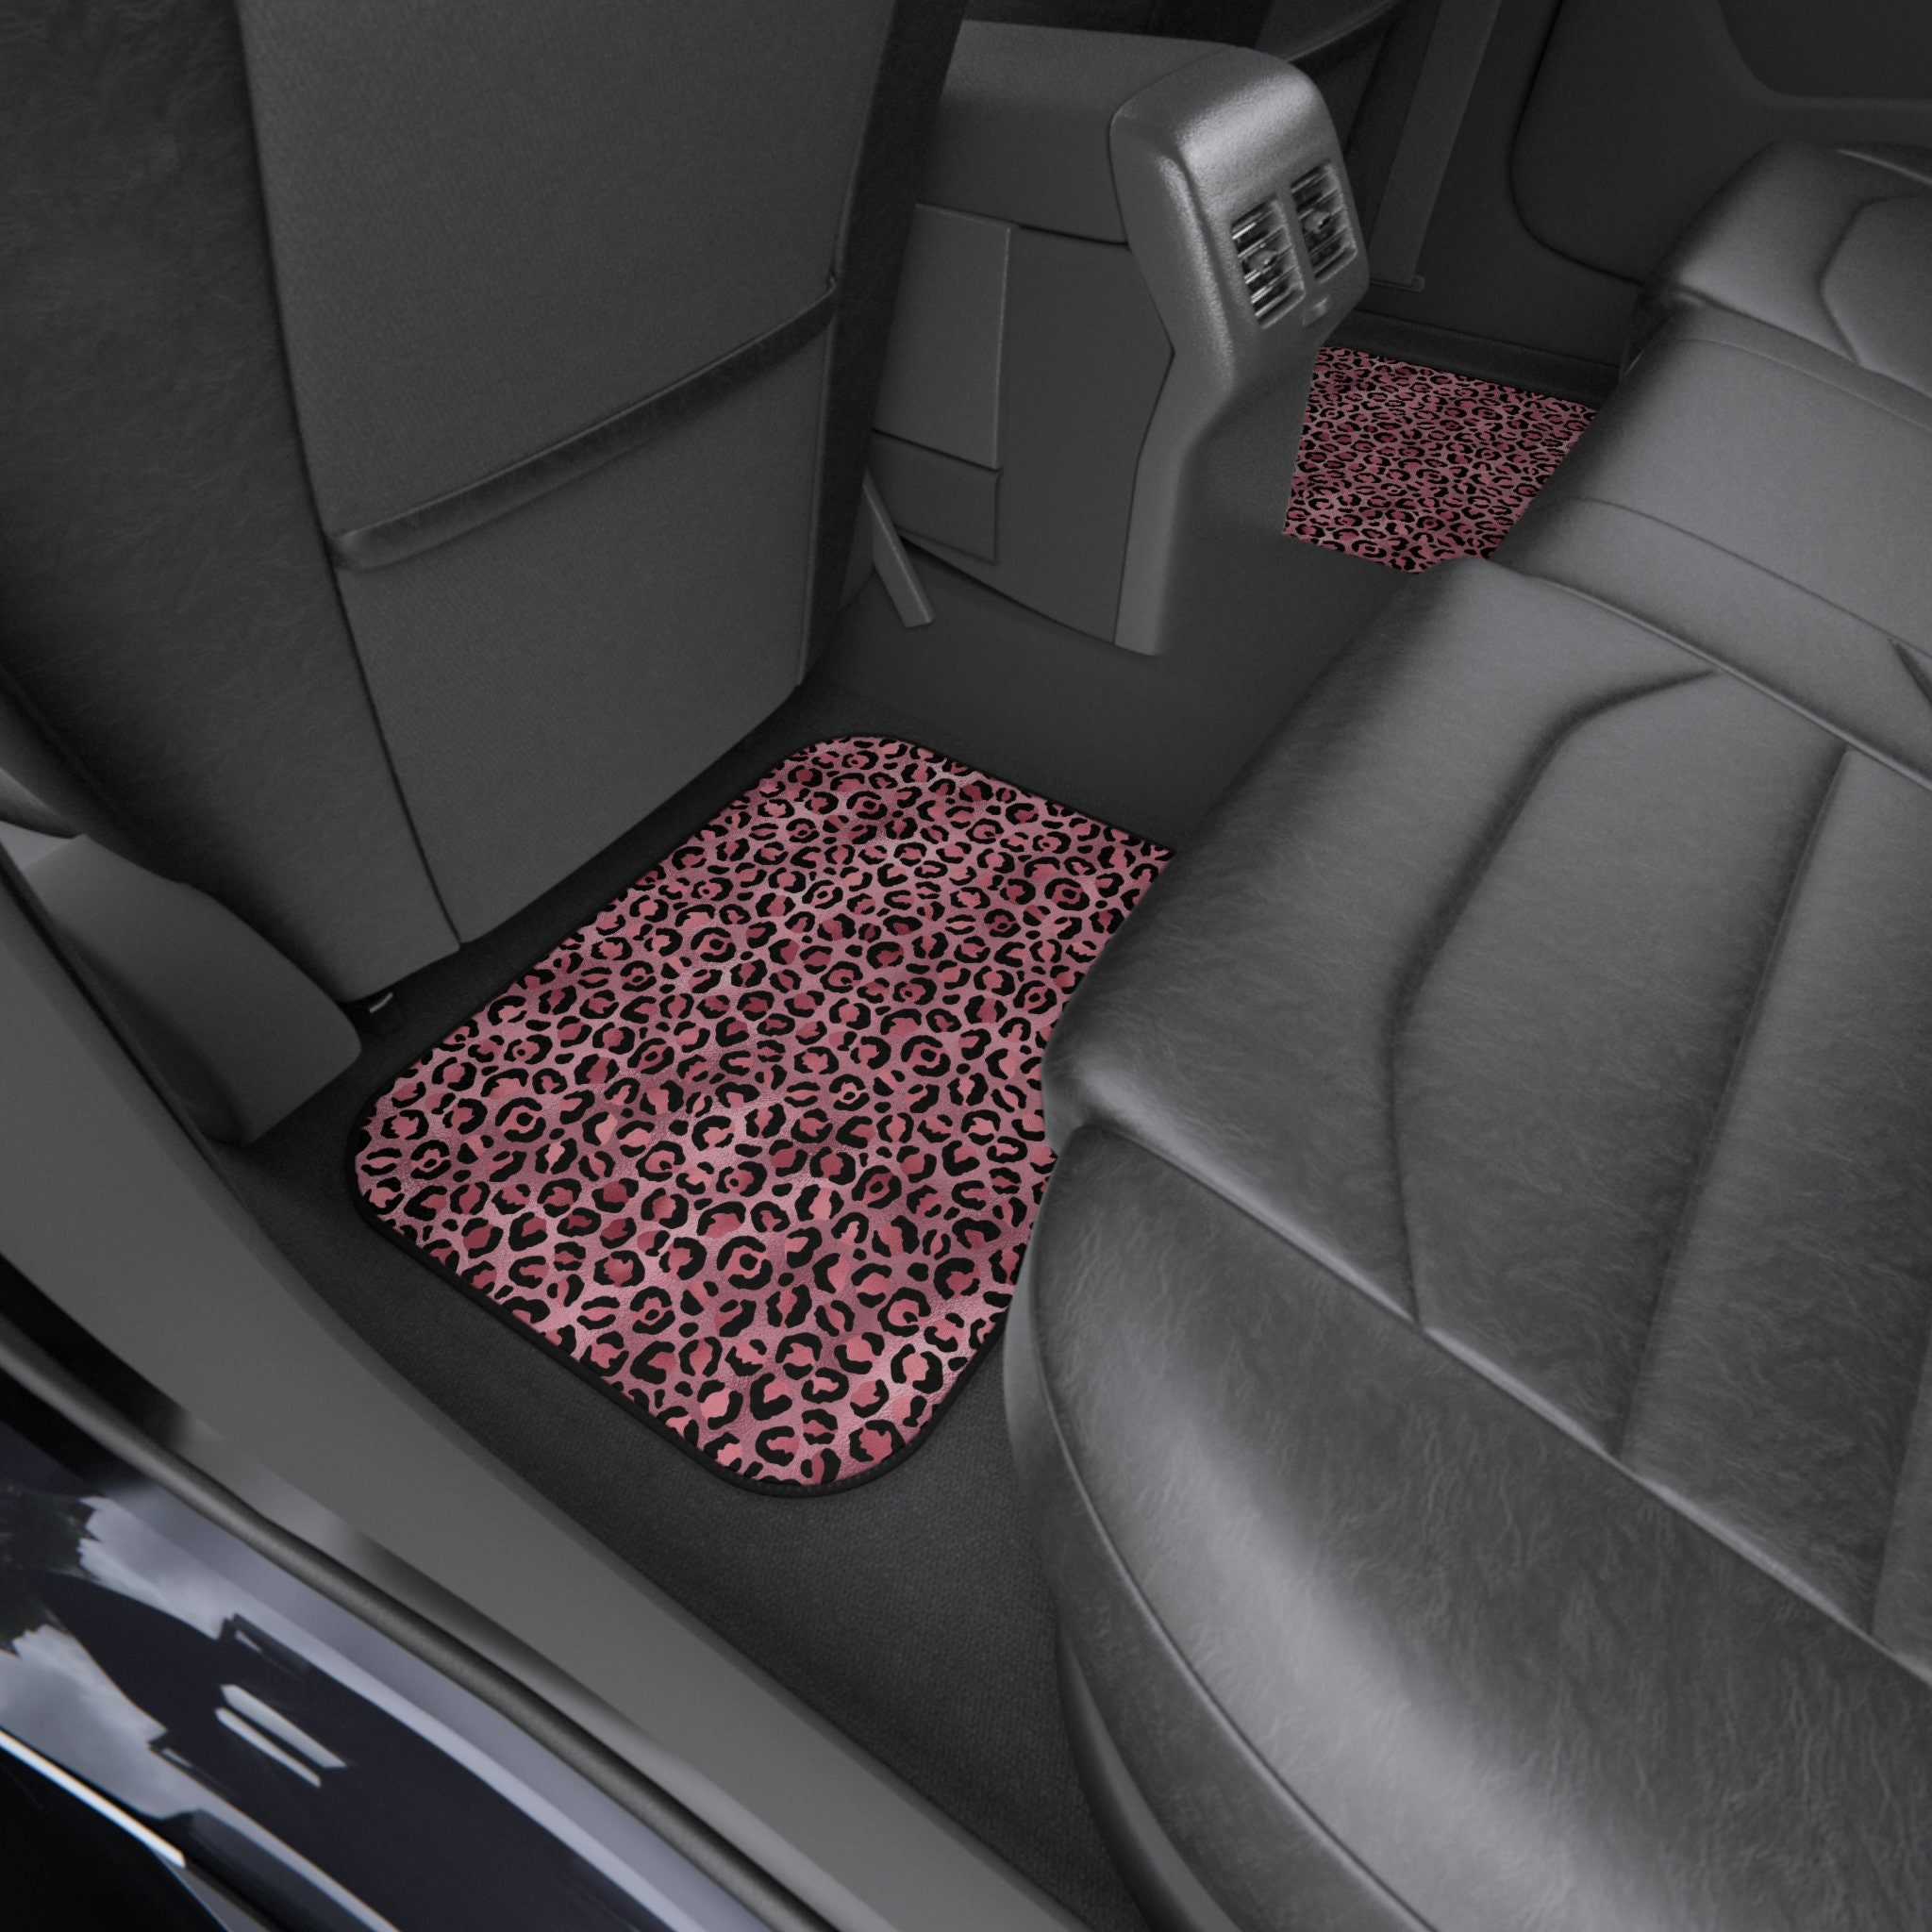 Discover Pink Leopard Print Car Mats Leopard Print Floor Mats for Car